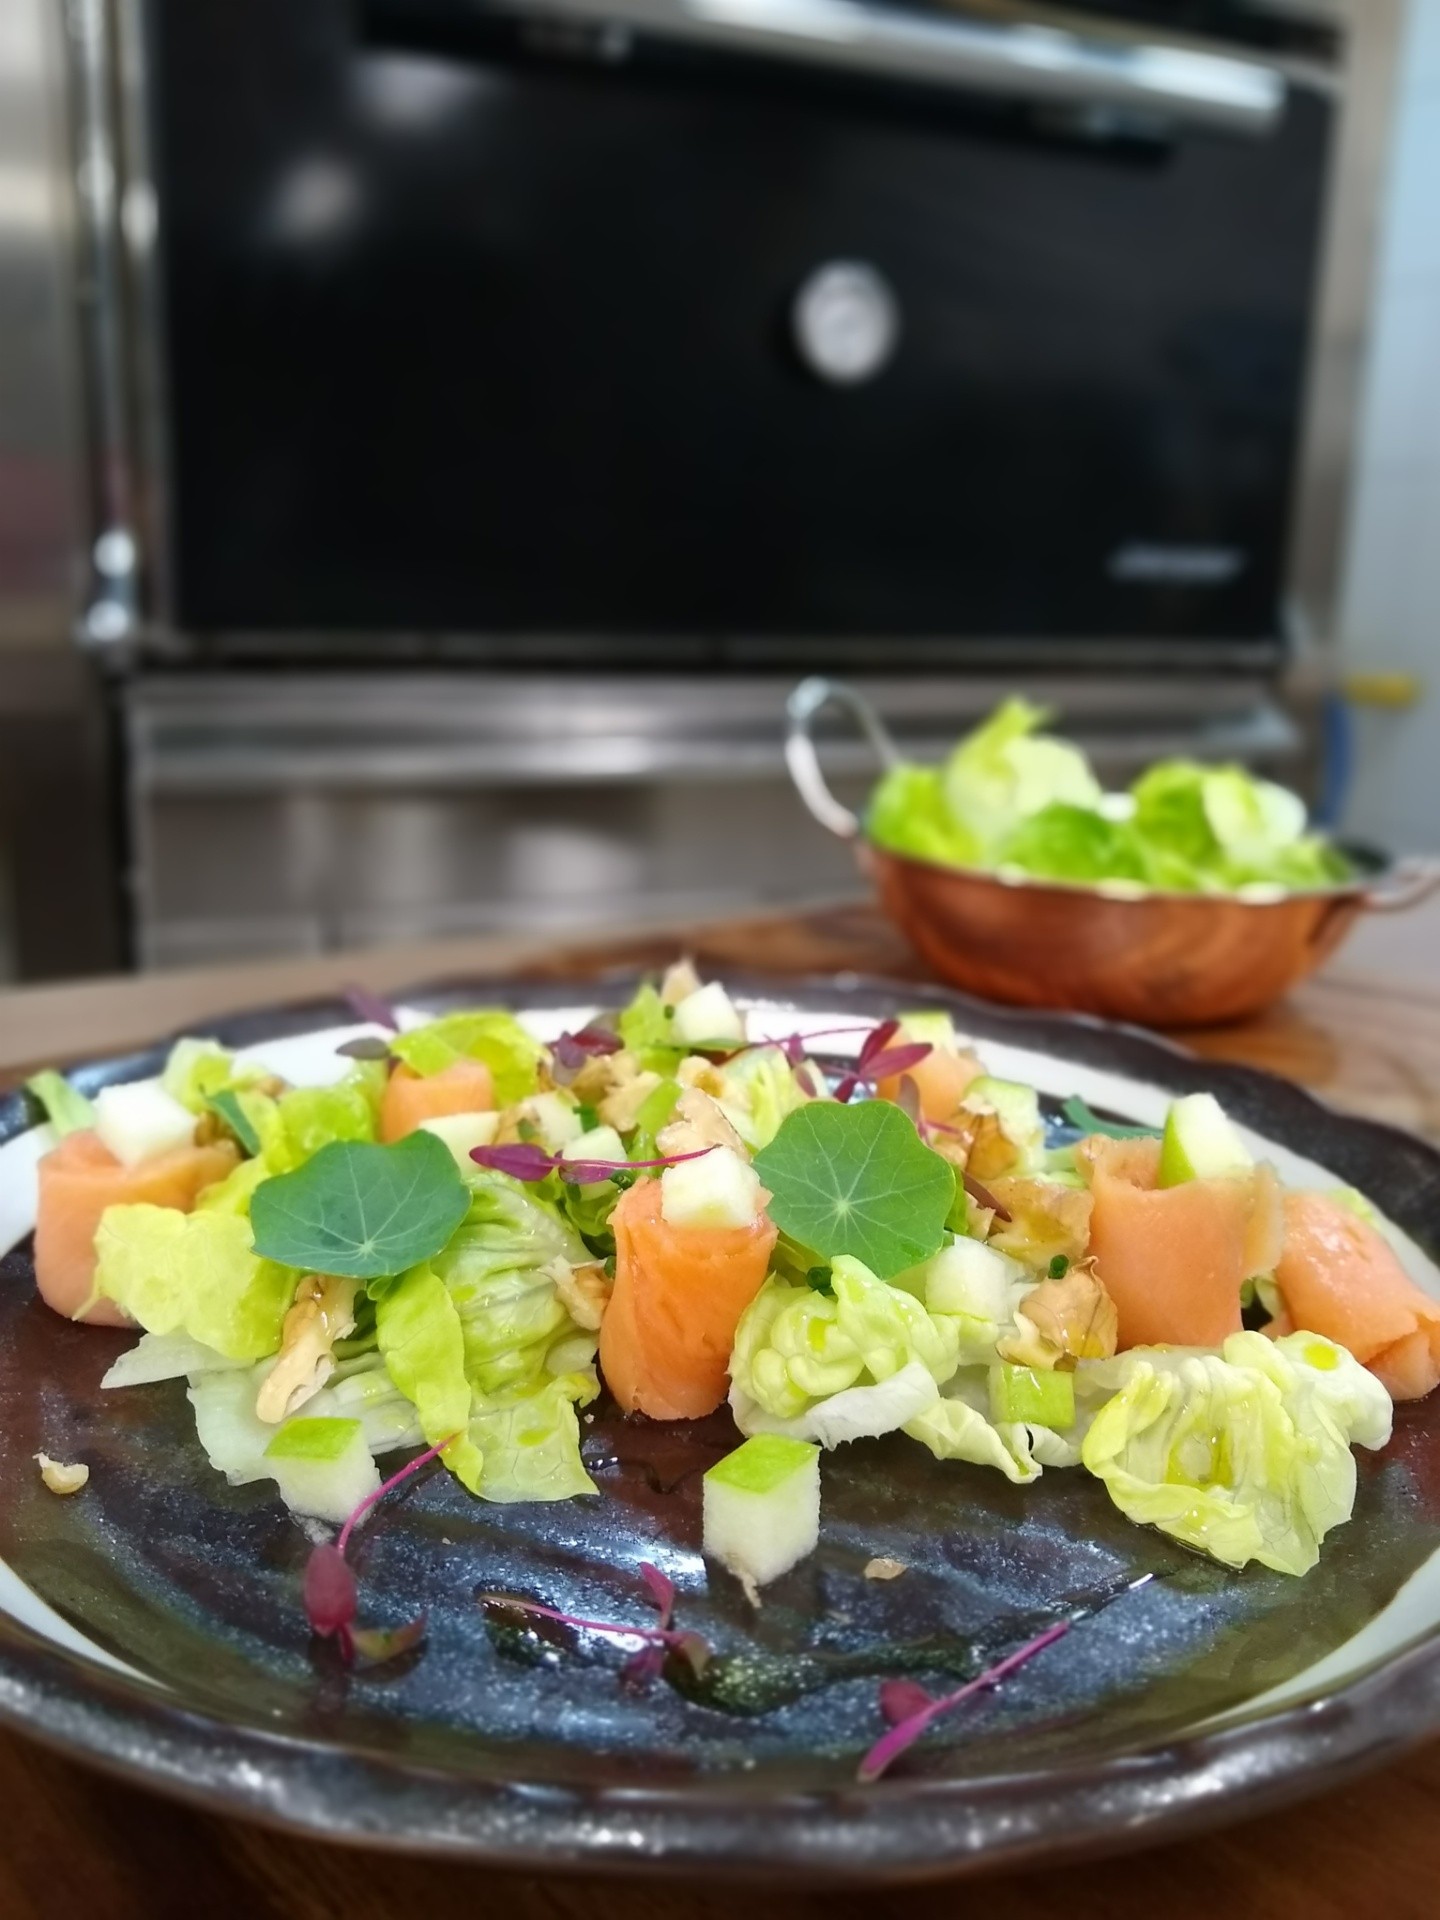 Receita de verão: salada de salmão defumado com maçã verde (Foto: Divulgação)